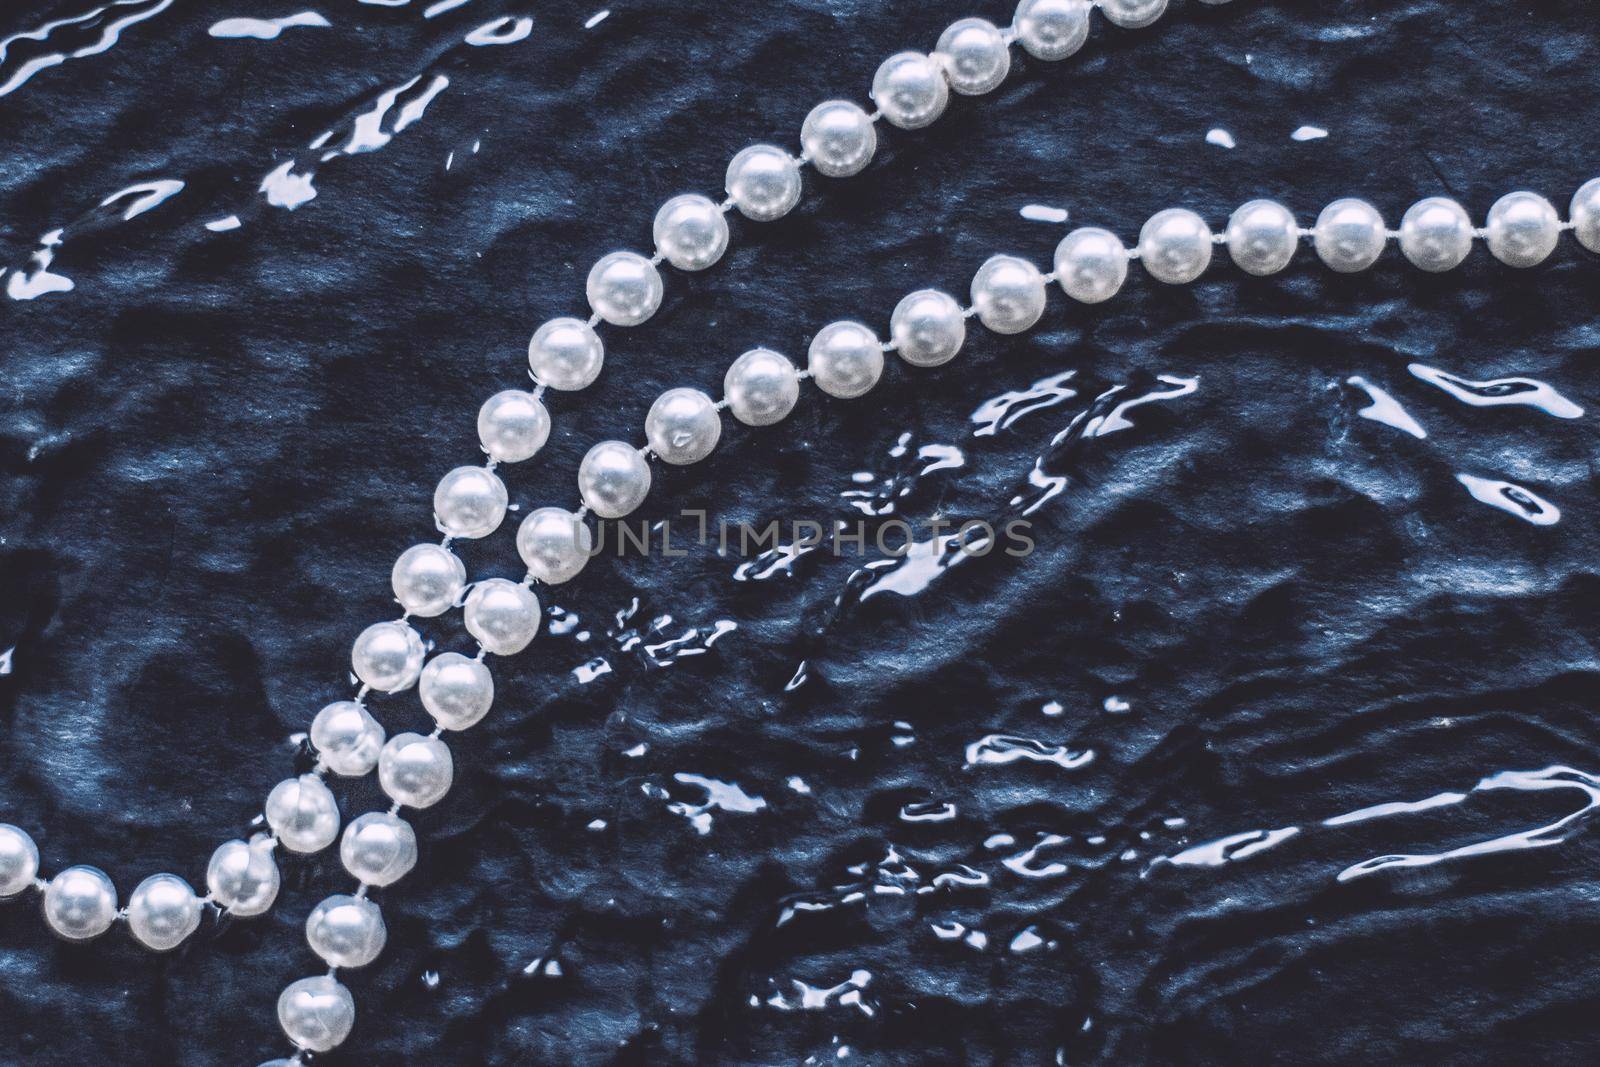 wonderful pearl jewellery by Anneleven